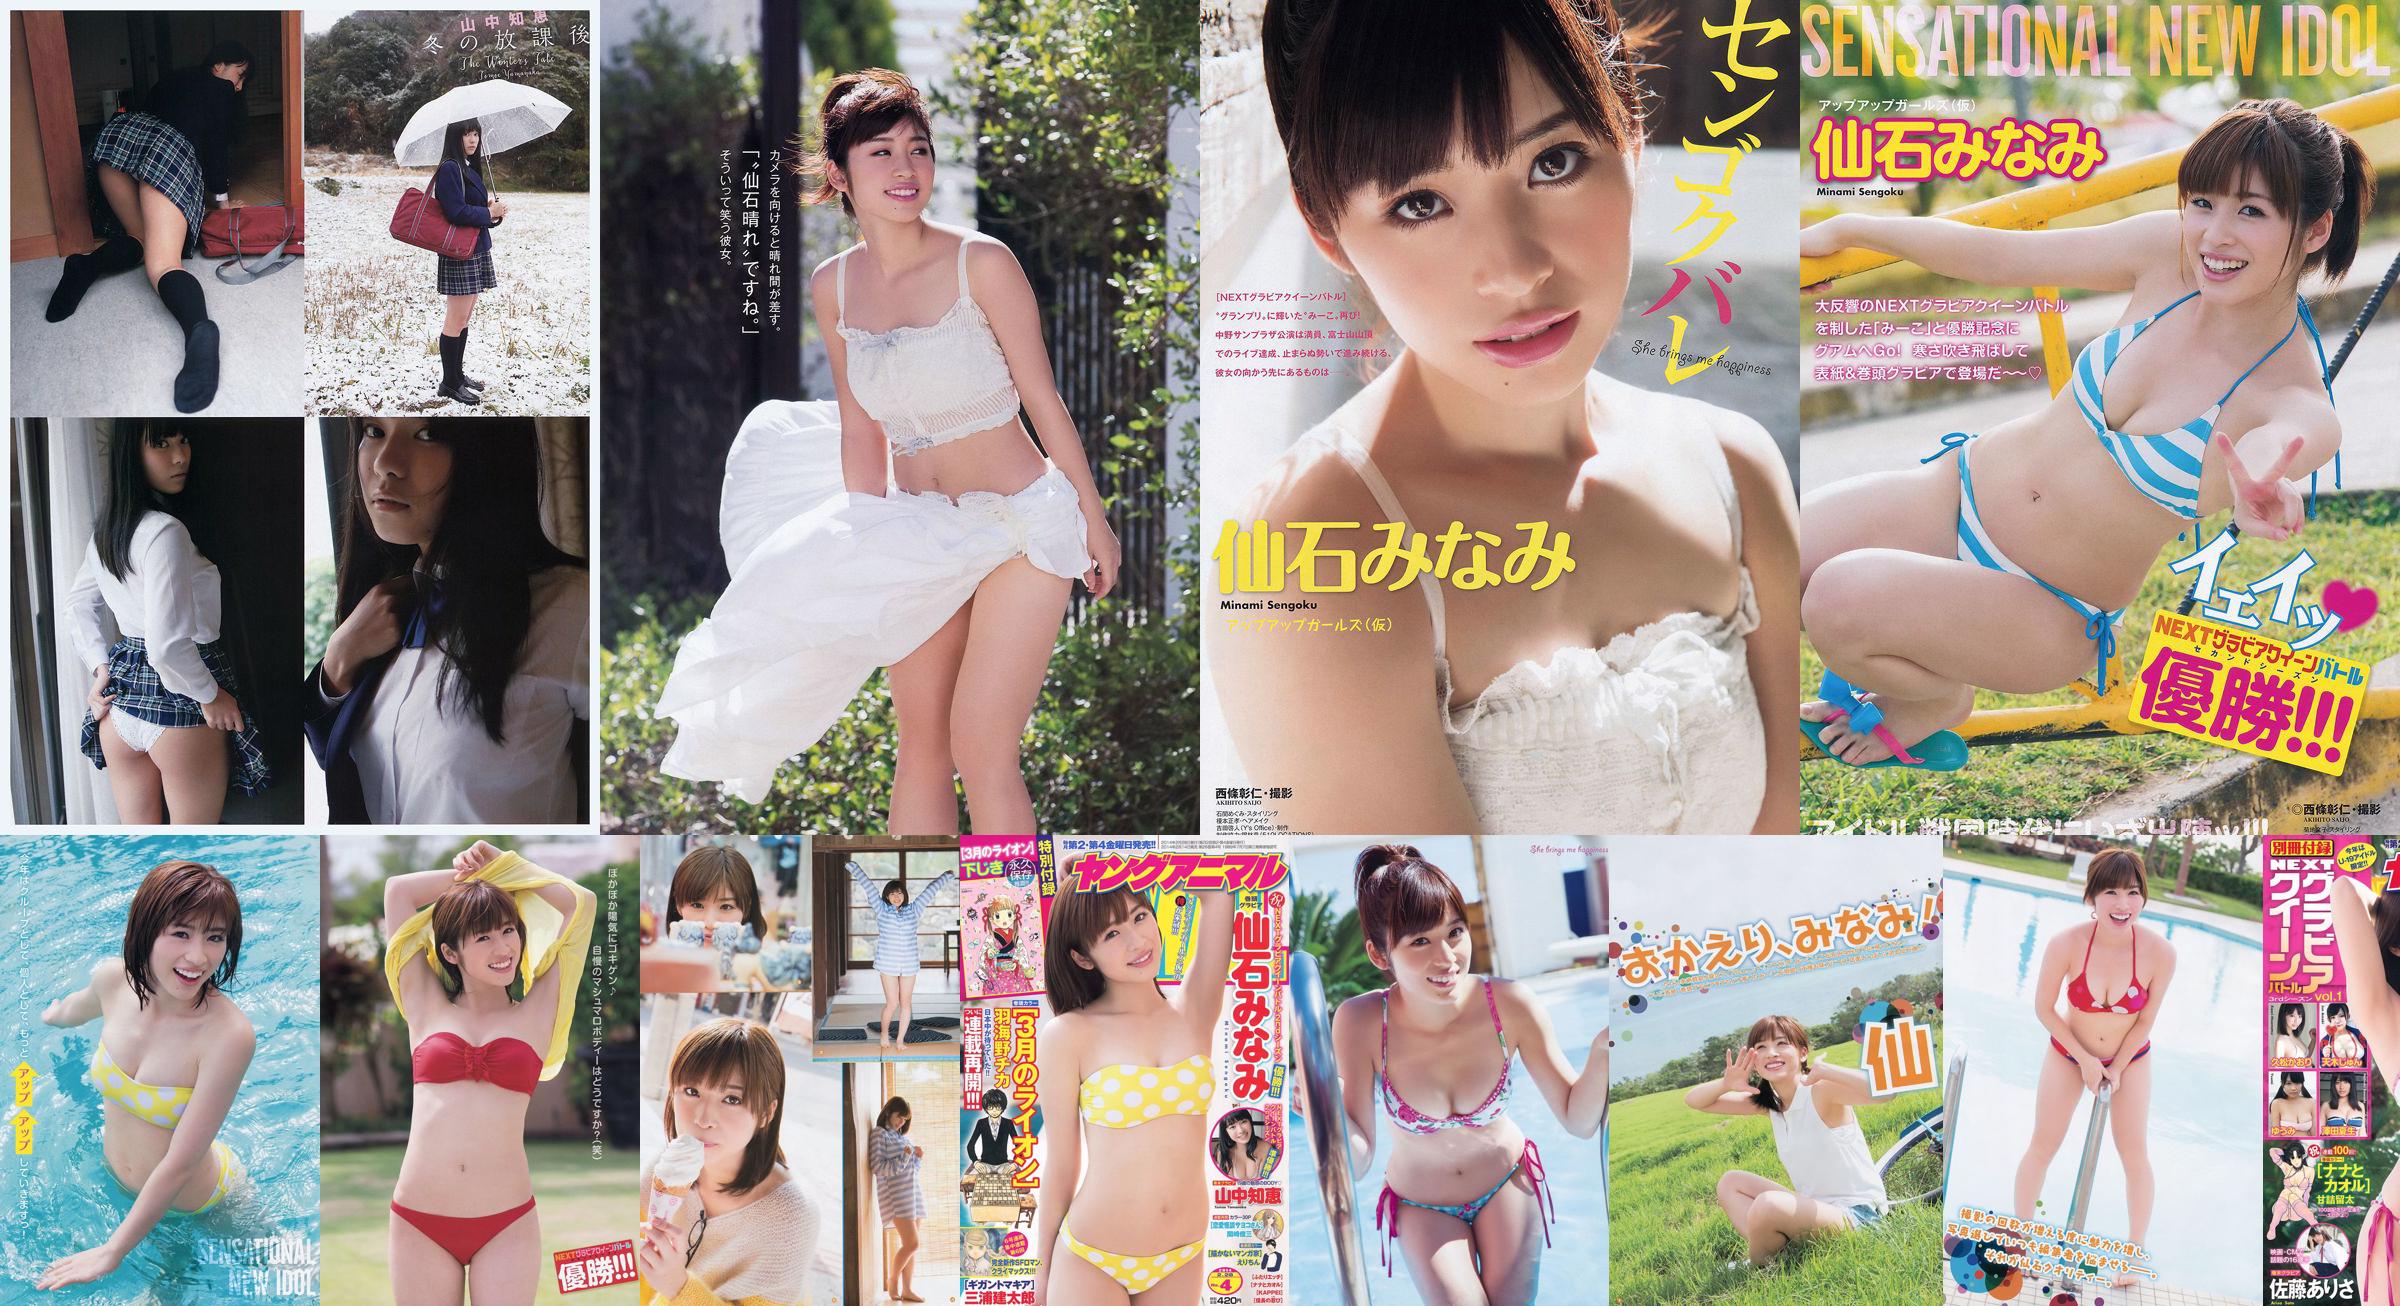 [Young Gangan] Senshi みなみ Yamanaka Tomoji Shiraishi アヤ Kataoka Saya 2014 No.01 Photo Magazine No.56869a Página 1